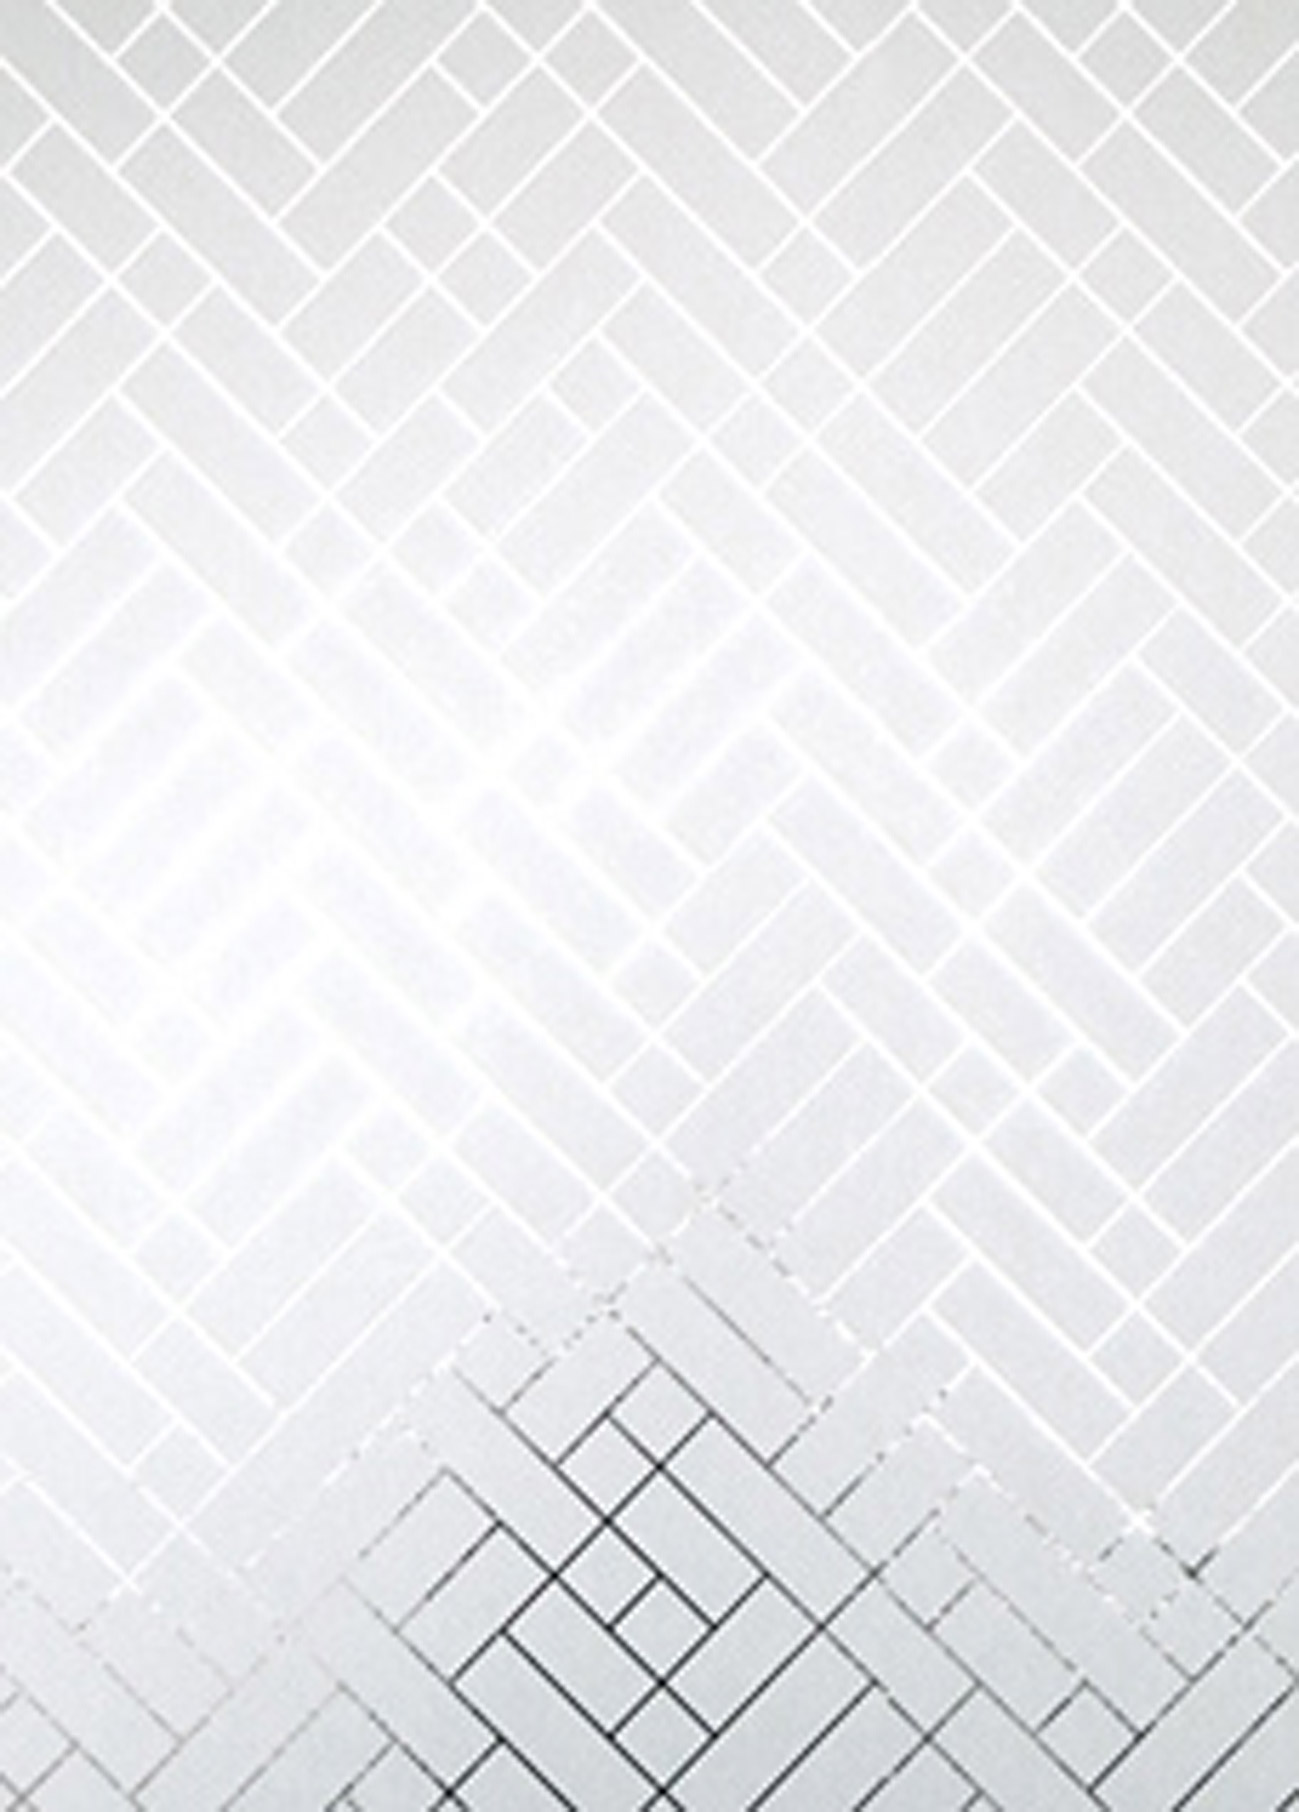 Silver Wallpaper Design White